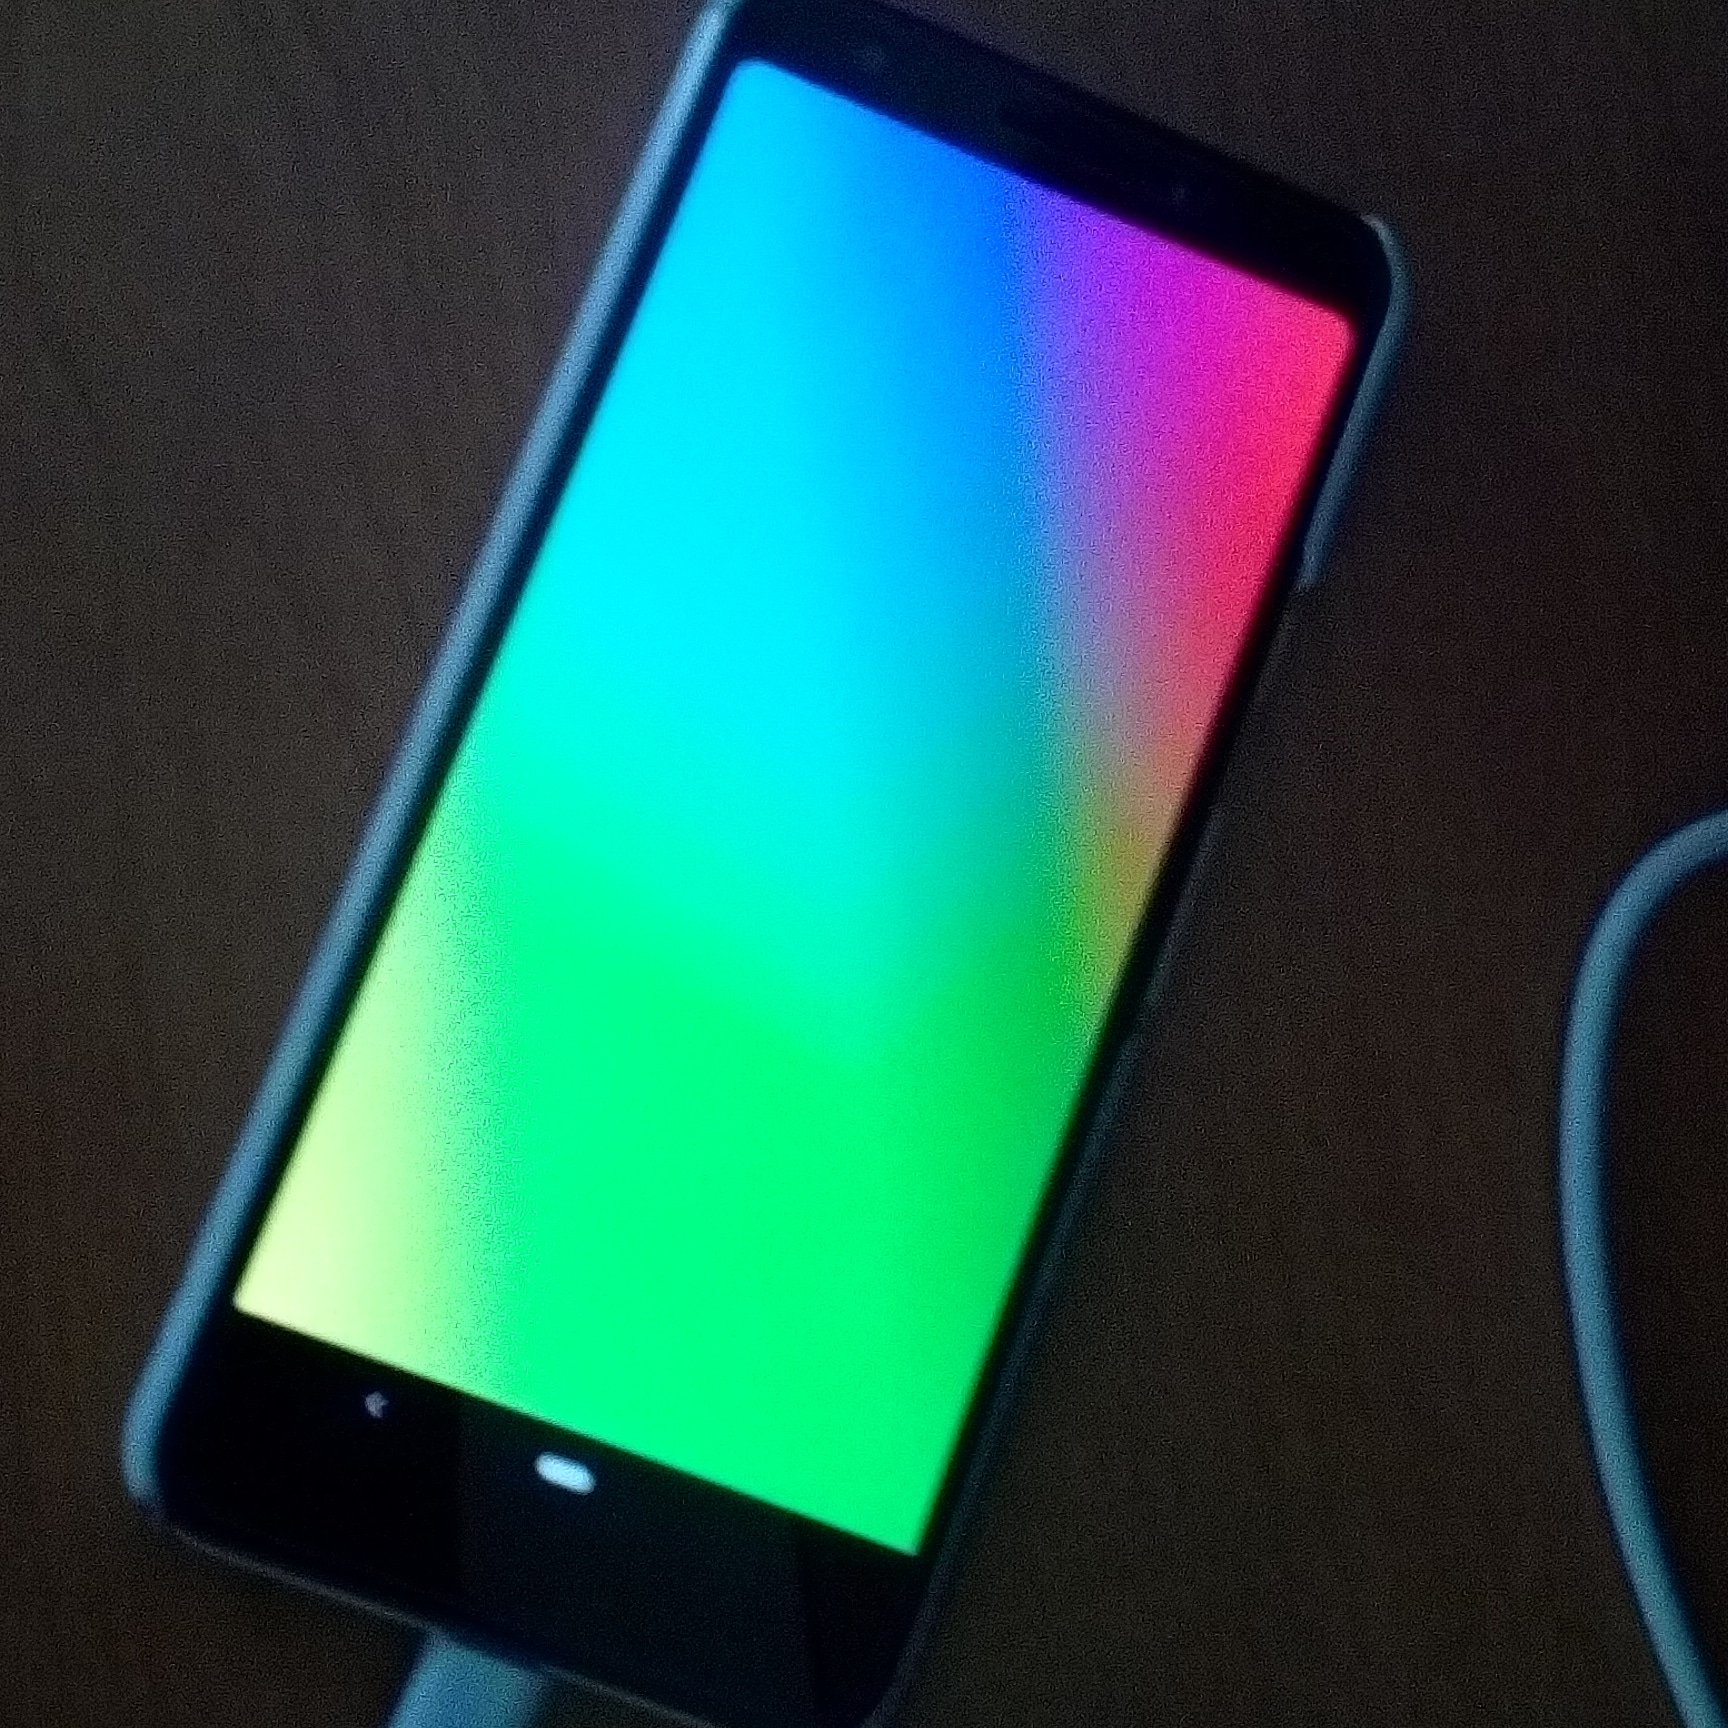 1週間ほど前から突然 充電すると画面が虹のよう虹複数の色の画面になる Pixel Phone Community